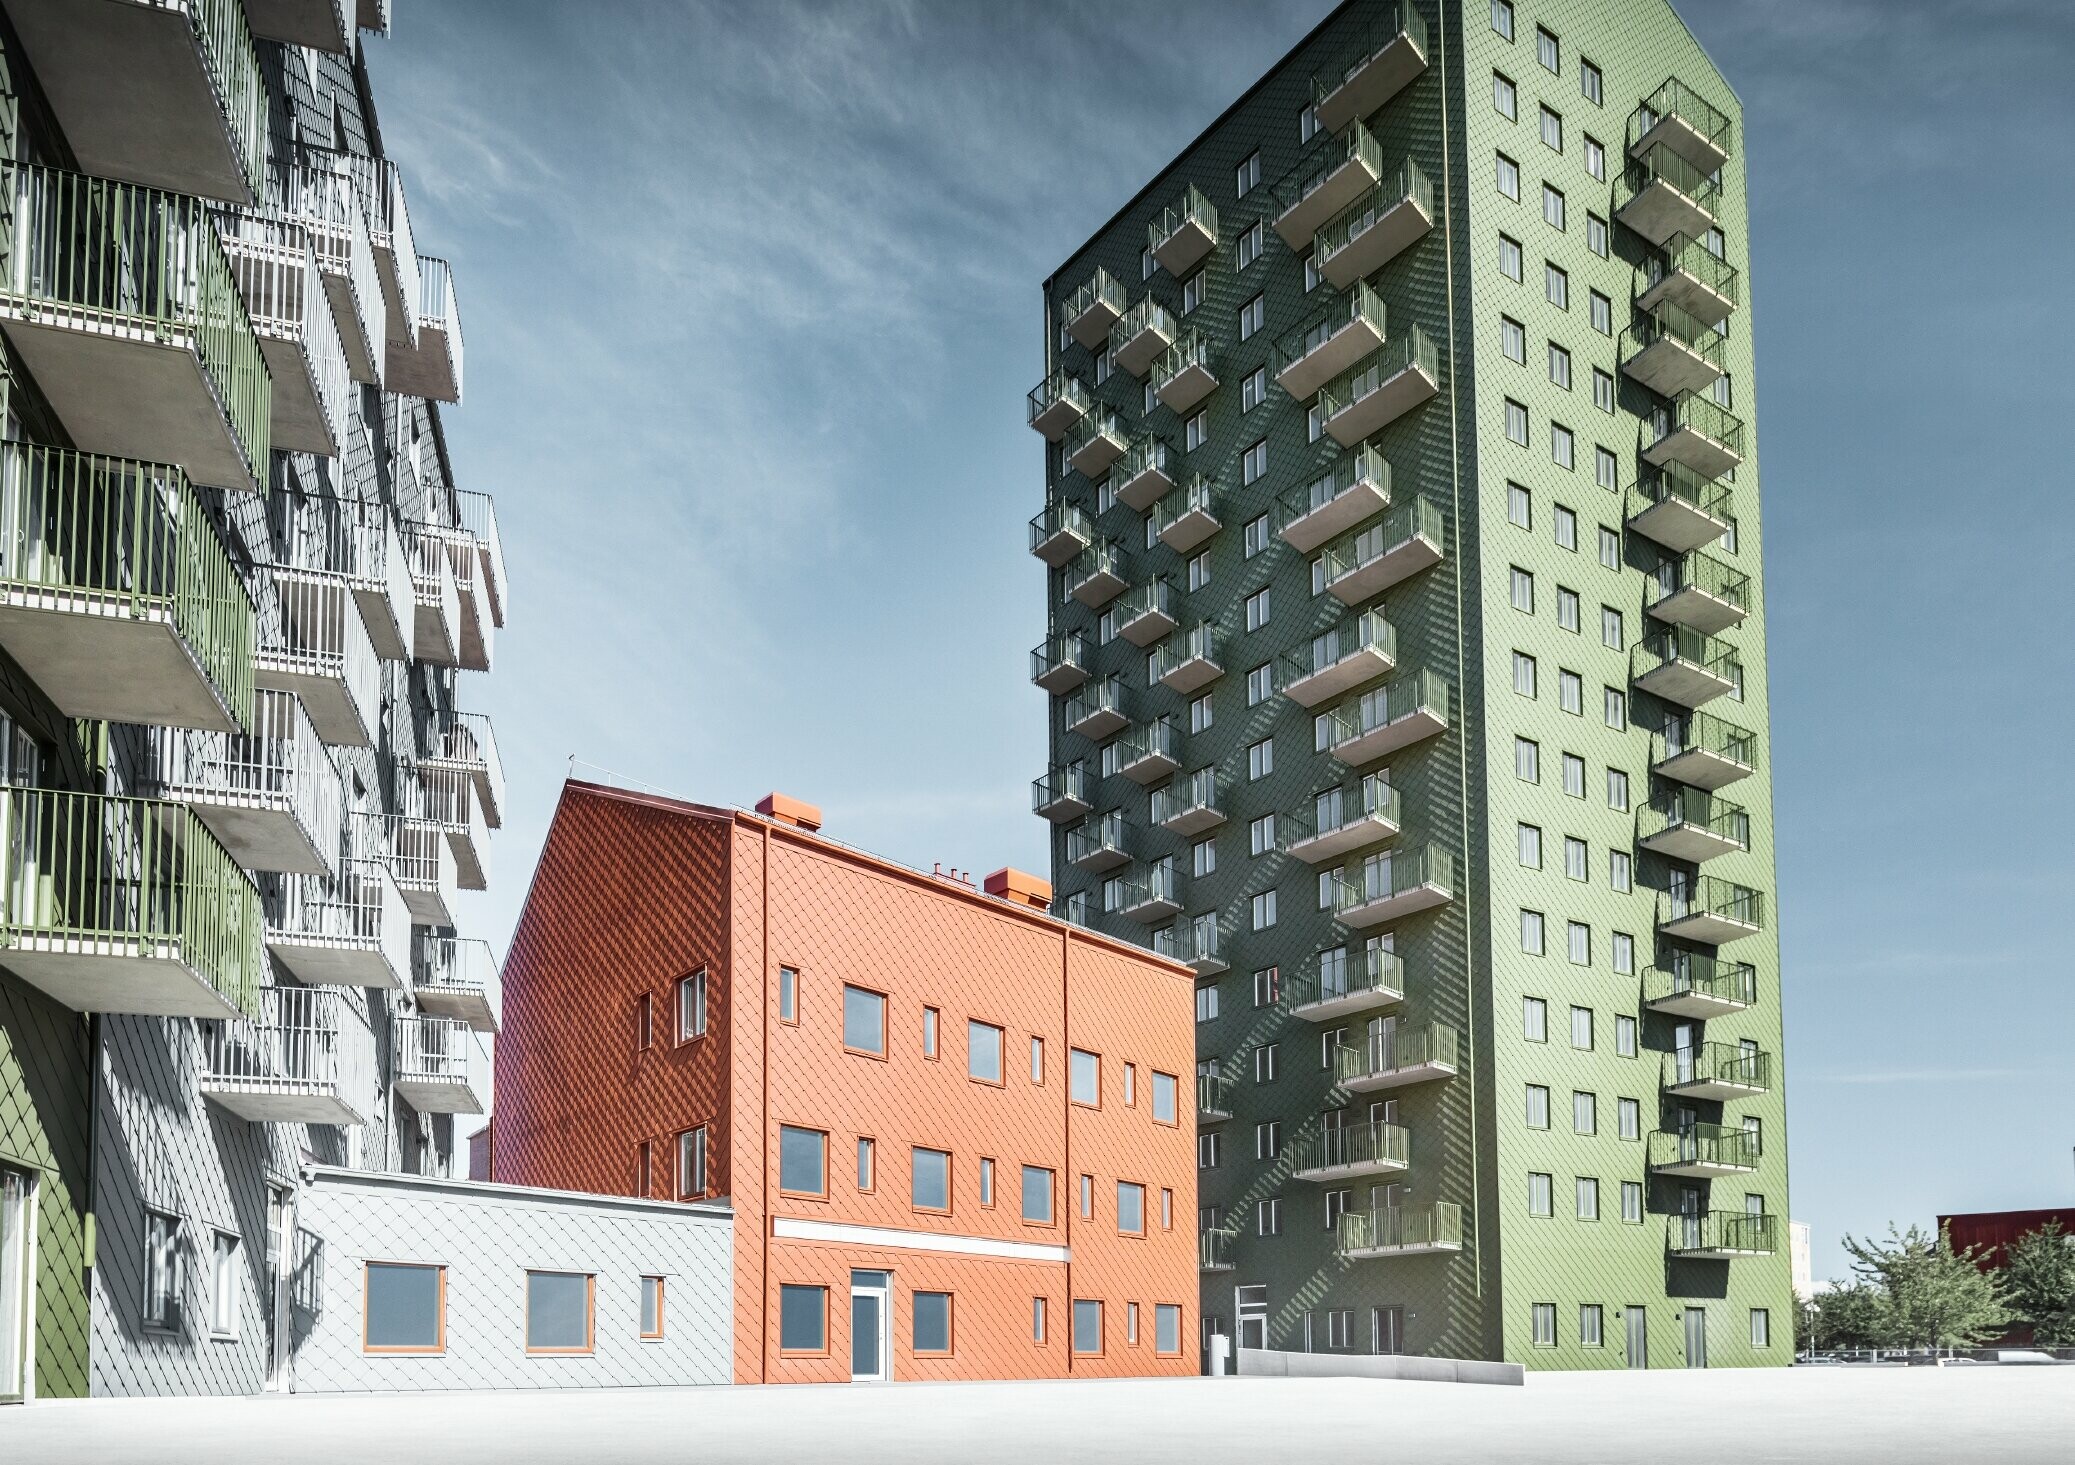 Mehrere Wohnbauten verkleidet mit der PREFA Wandraute 29 × 29 in den Farben Olivgrün, Ziegelrot und Hellgrau in Göteborg, Schweden.